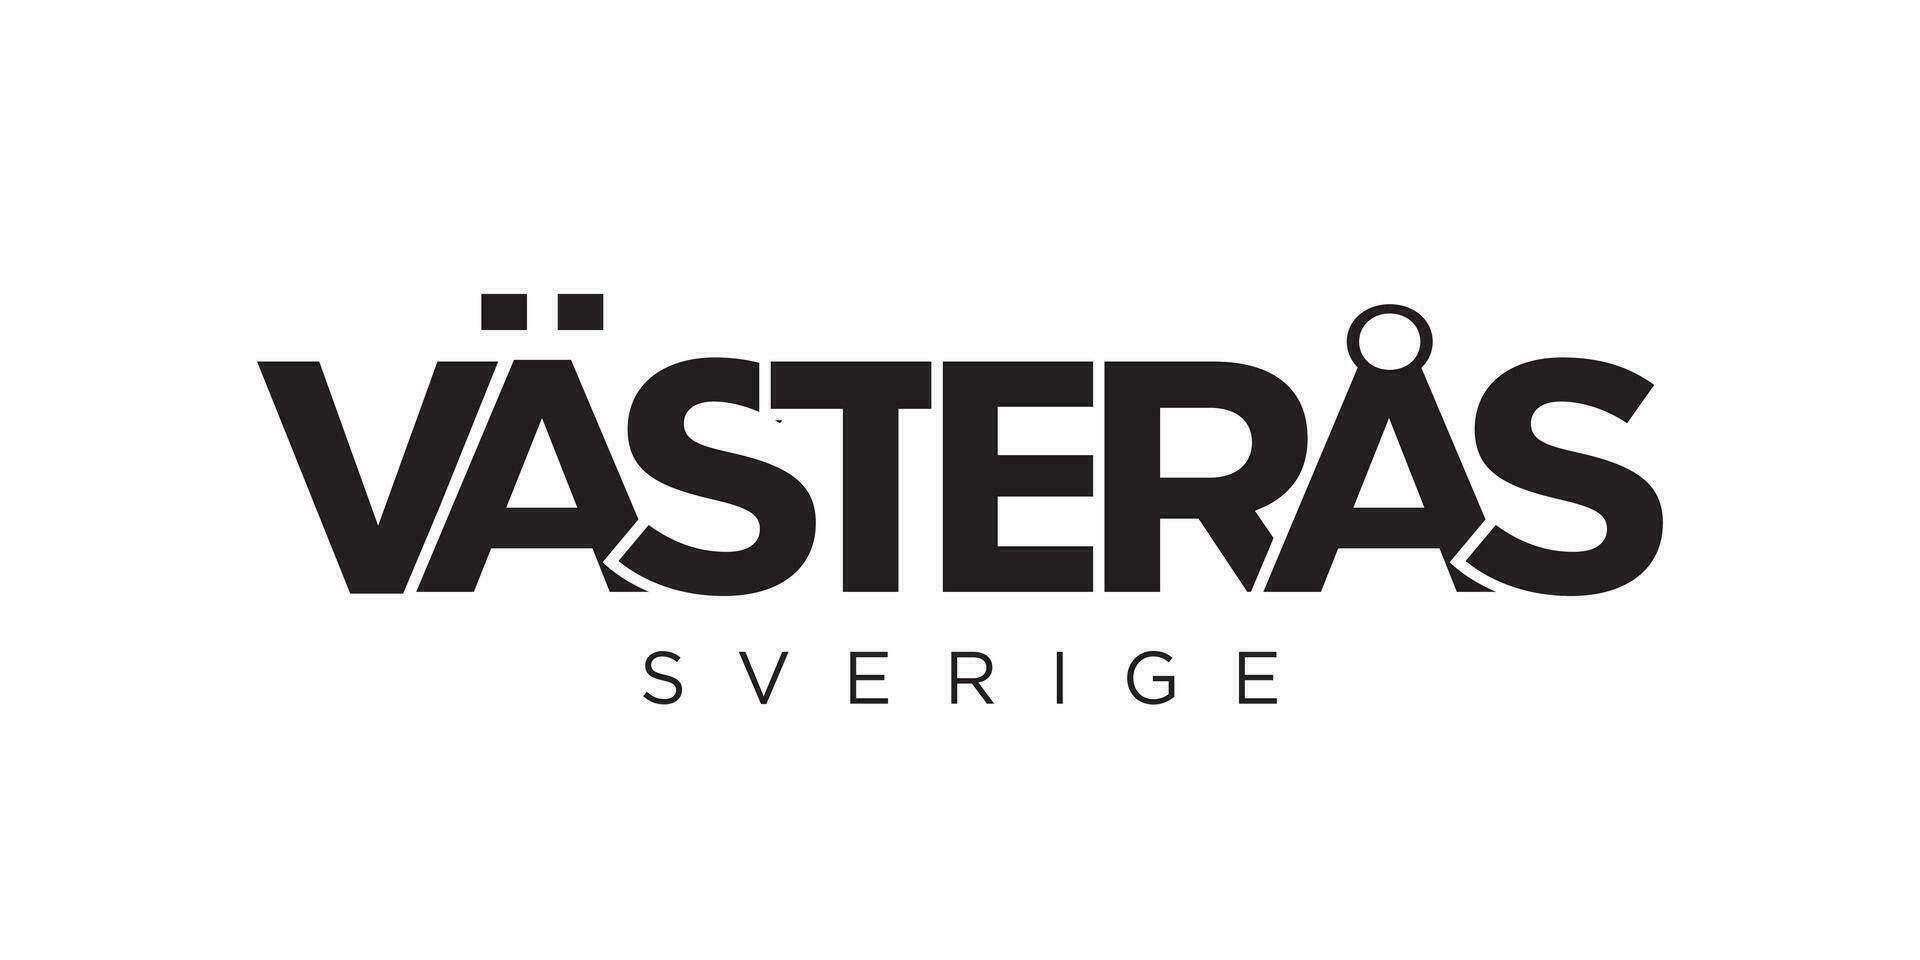 vasteras en el Suecia emblema. el diseño caracteristicas un geométrico estilo, vector ilustración con negrita tipografía en un moderno fuente. el gráfico eslogan letras.